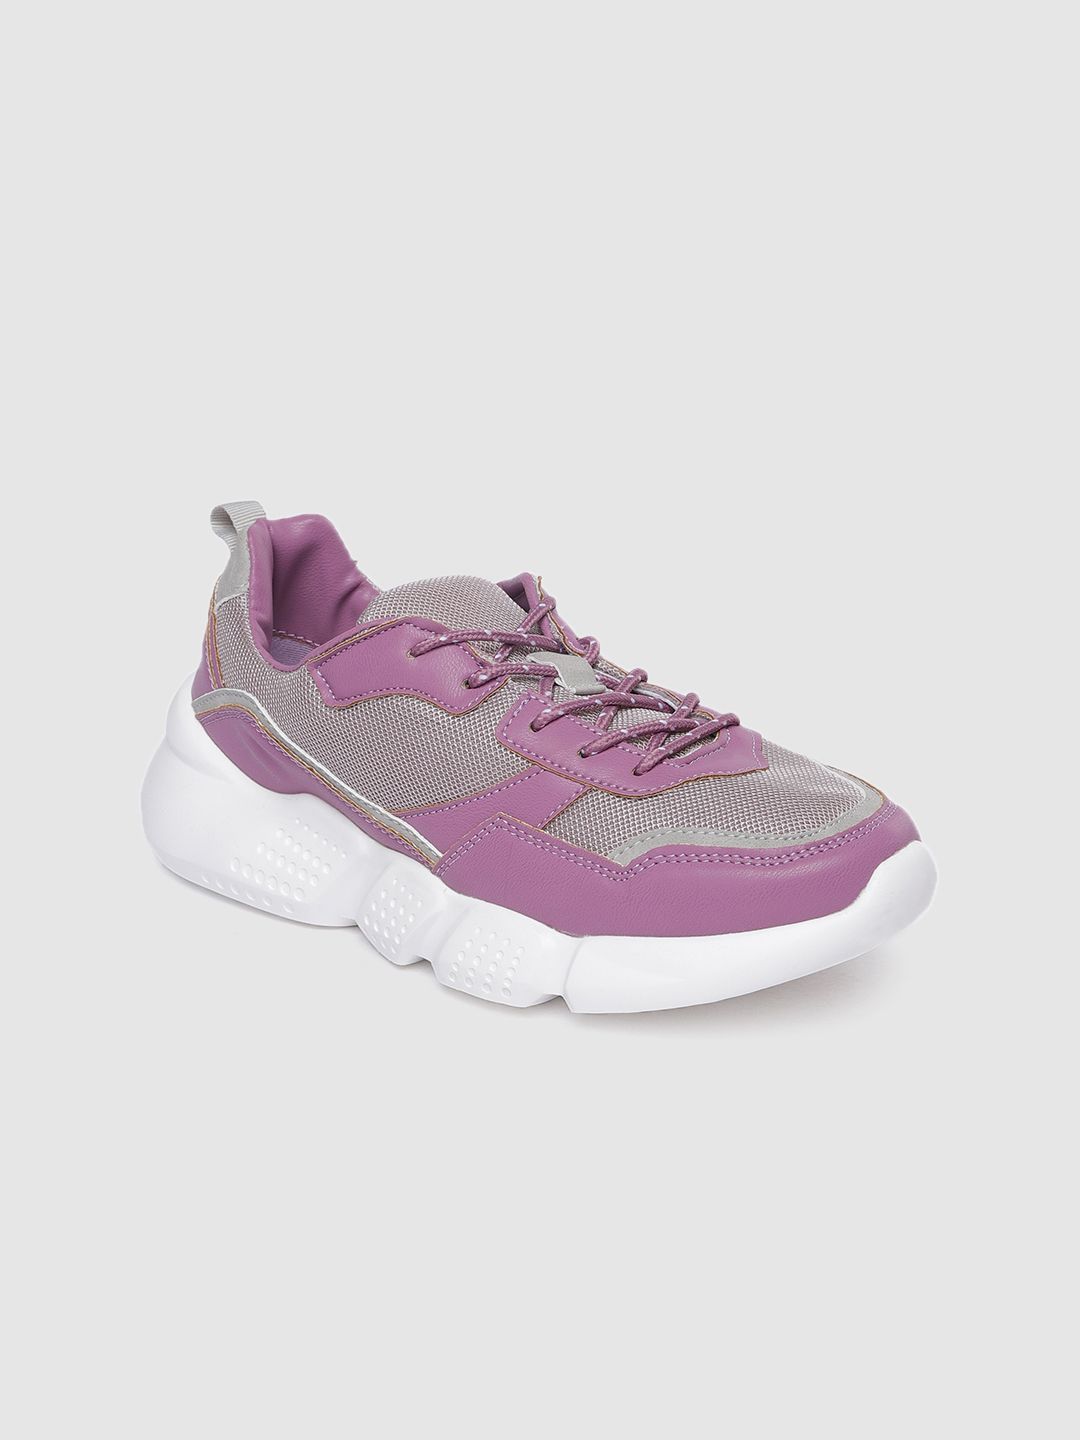 Allen Solly Women Purple Sneakers Price in India